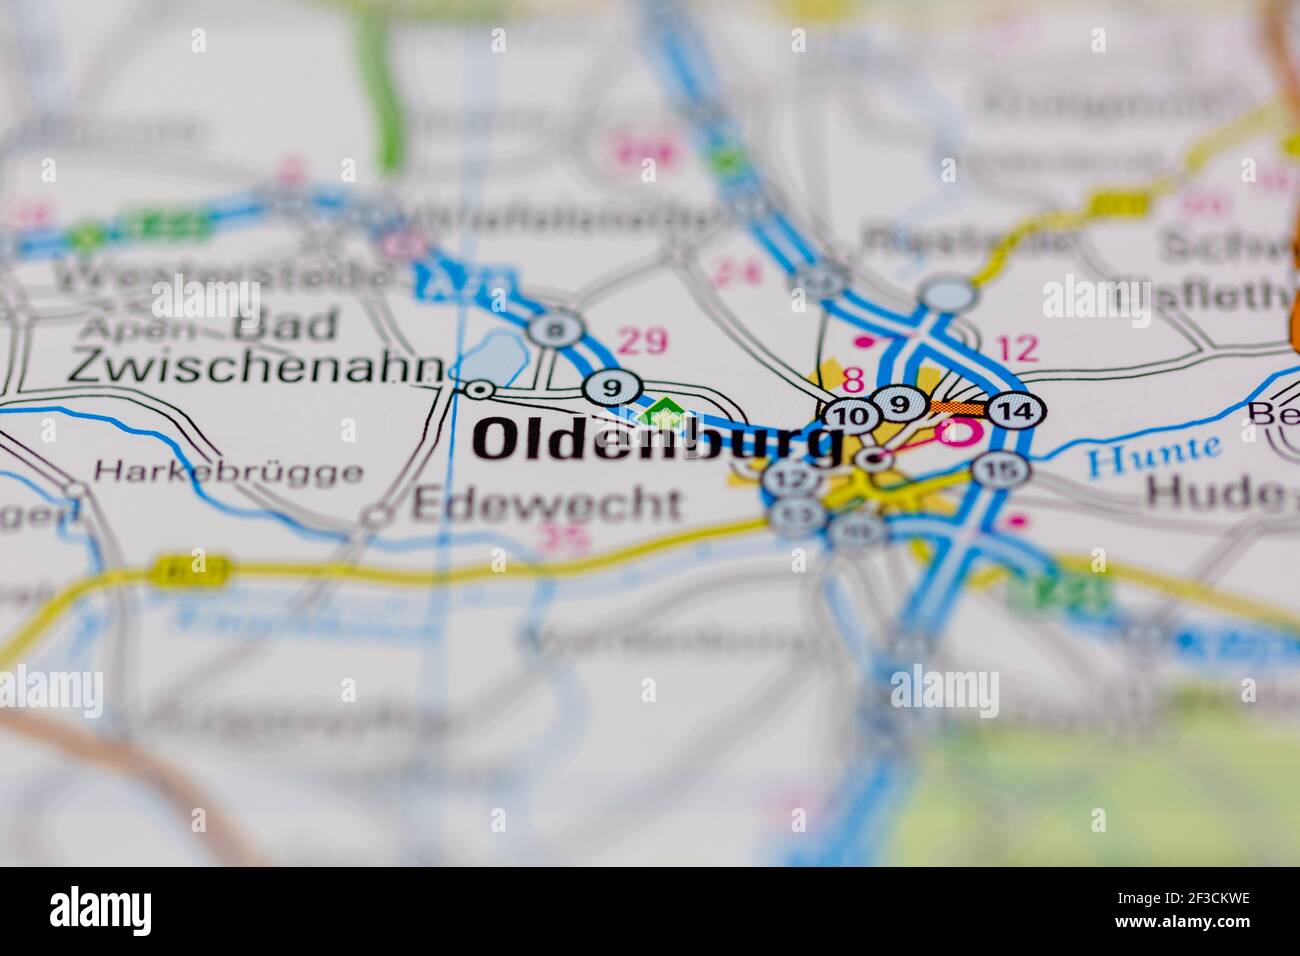 Oldenburg auf einer Geografie- oder Straßenkarte angezeigt Stockfoto